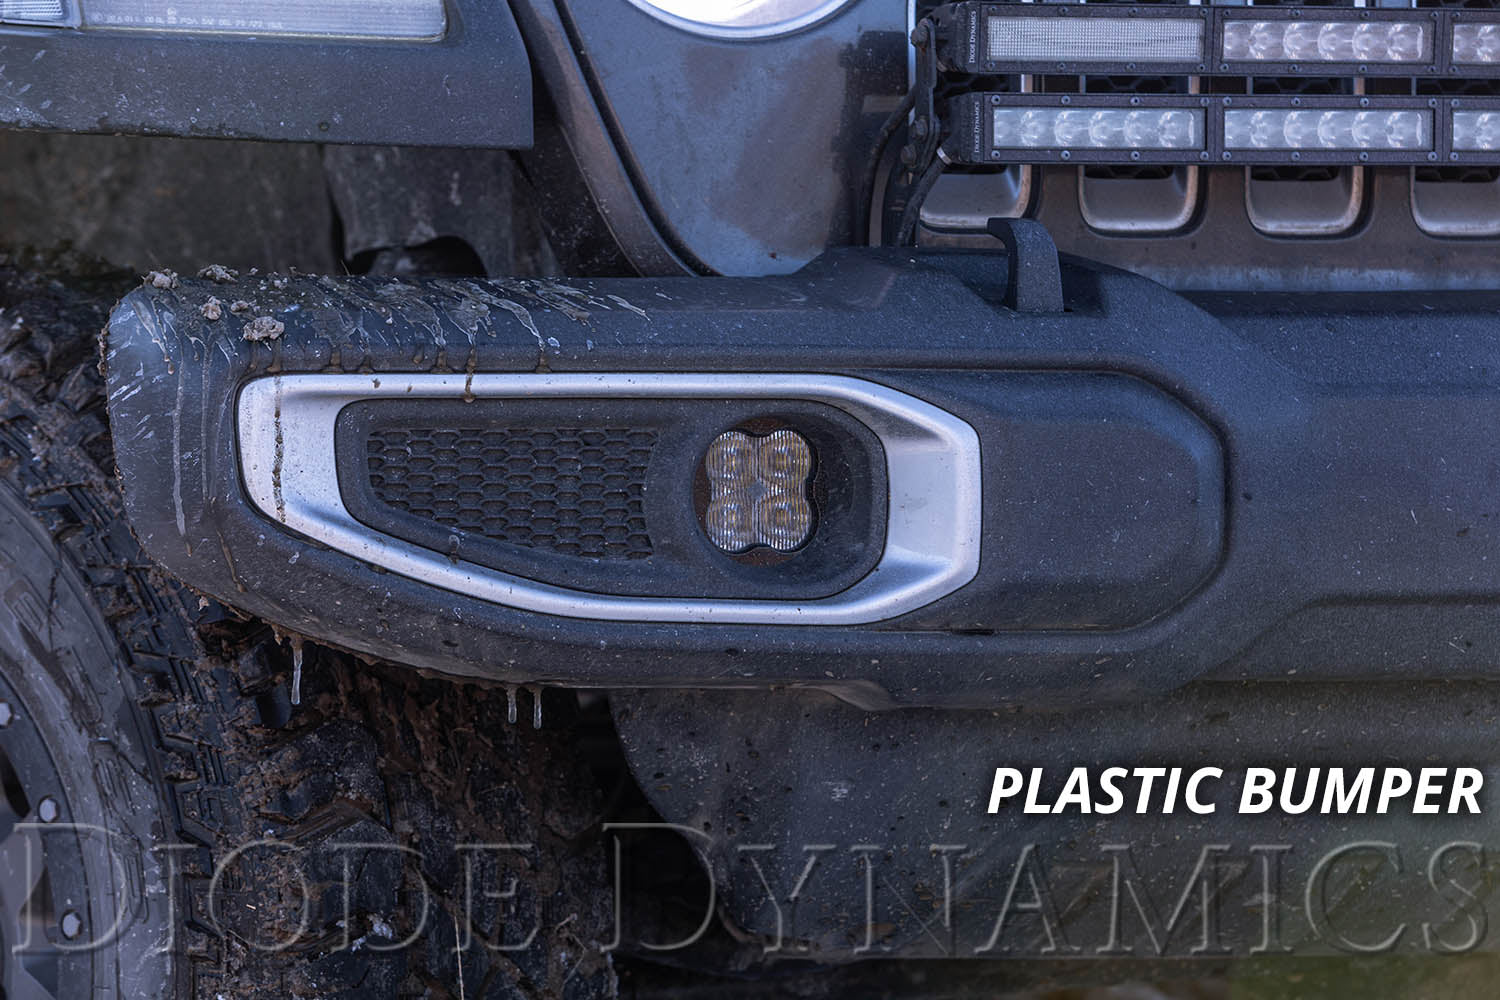 SS3 LED Fog Light Kit for 2020-2021 Jeep Gladiator White SAE Fog Pro w/ Backlight Type MS Bracket Kit Diode Dynamics